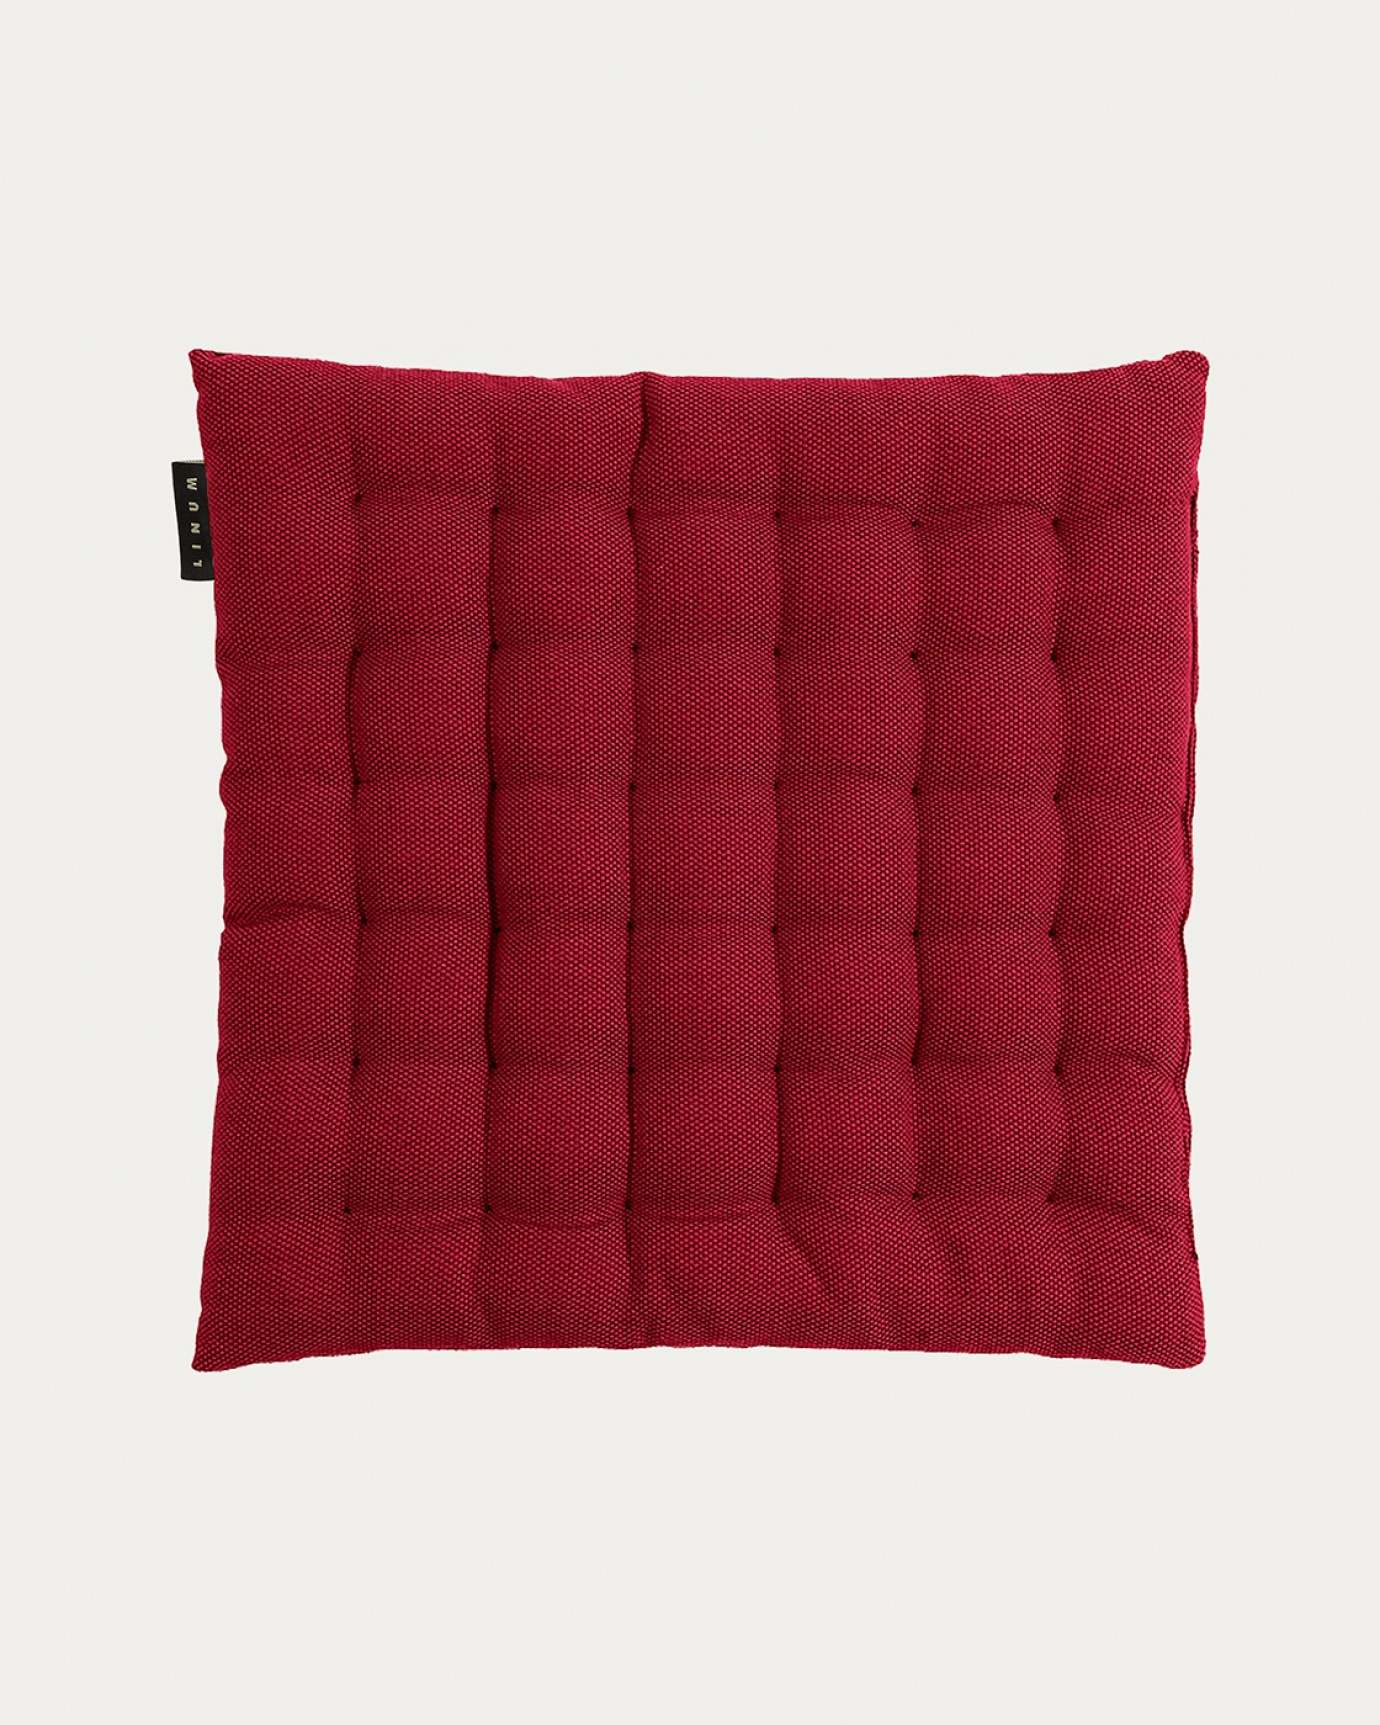 Produktbild rot PEPPER Sitzkissen aus weicher Baumwolle mit Füllung aus recyceltem Polyester von LINUM DESIGN. Größe 40x40 cm.